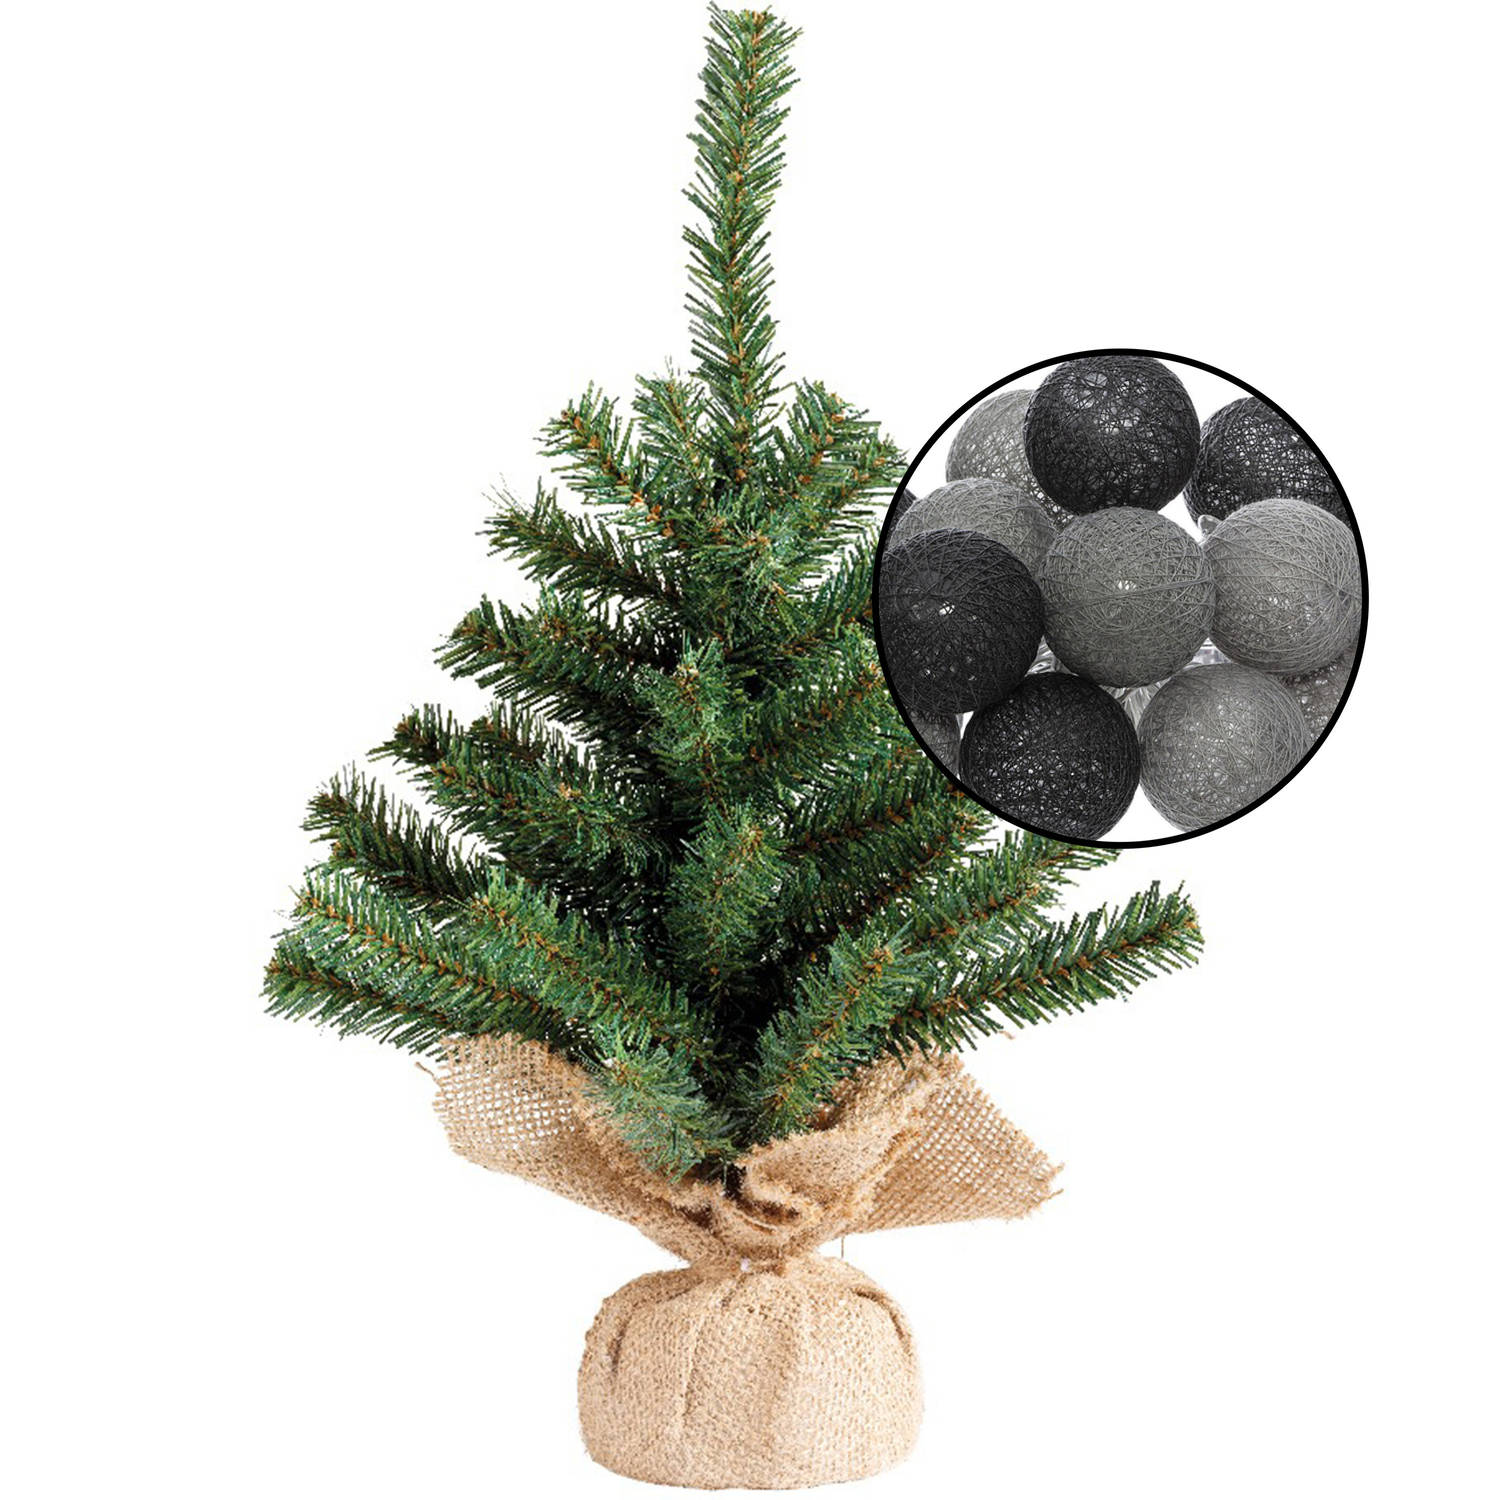 Mini kunst kerstboom groen met verlichting in jute zak H45 cm zwart-grijs Kunstkerstboom